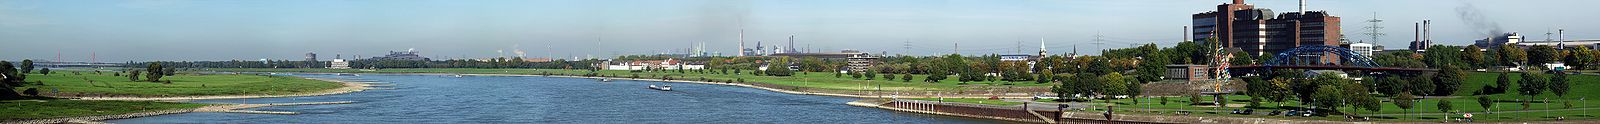 Blick auf den Rhein bei Duisburg